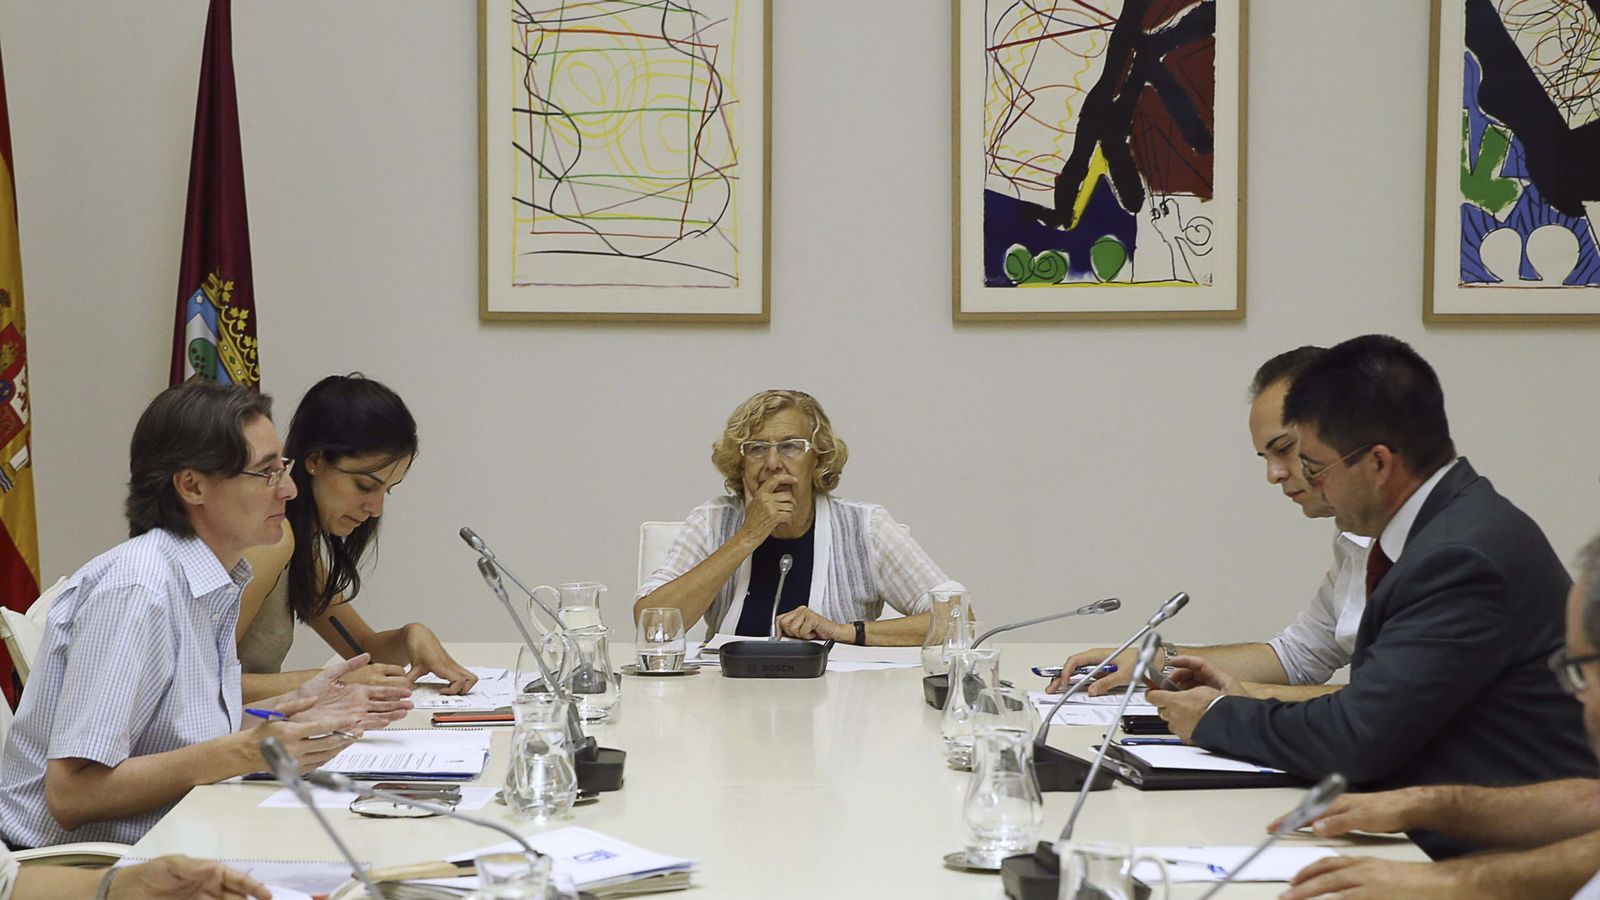 Foto: La alcaldesa de Madrid, Manuela Carmena, junto a varios miembros de su equipo durante una junta gobierno. (EFE)